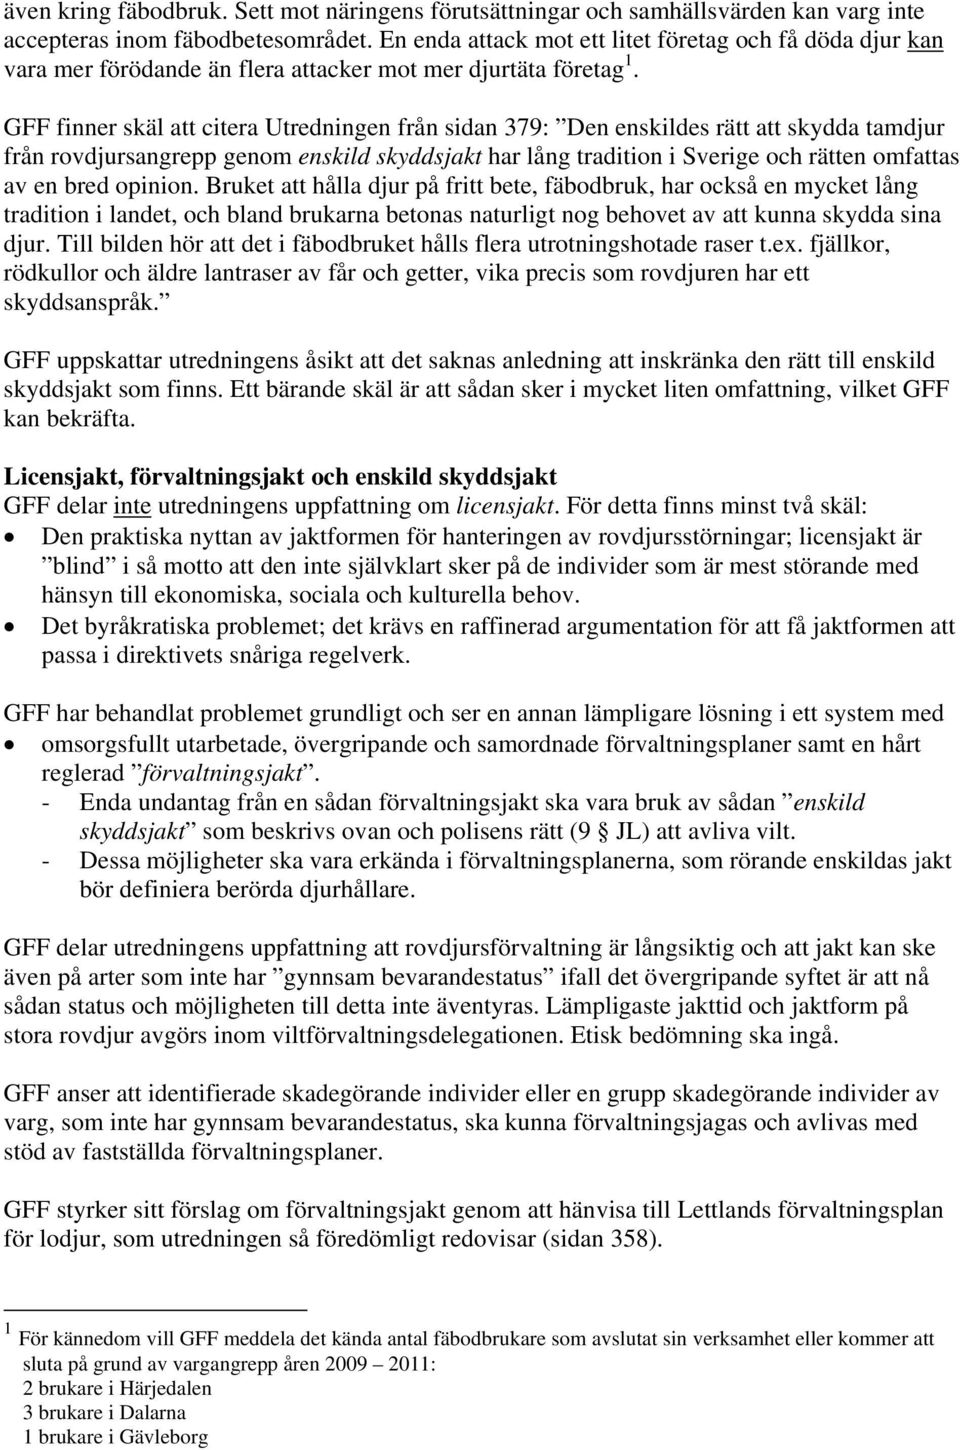 GFF finner skäl att citera Utredningen från sidan 379: Den enskildes rätt att skydda tamdjur från rovdjursangrepp genom enskild skyddsjakt har lång tradition i Sverige och rätten omfattas av en bred